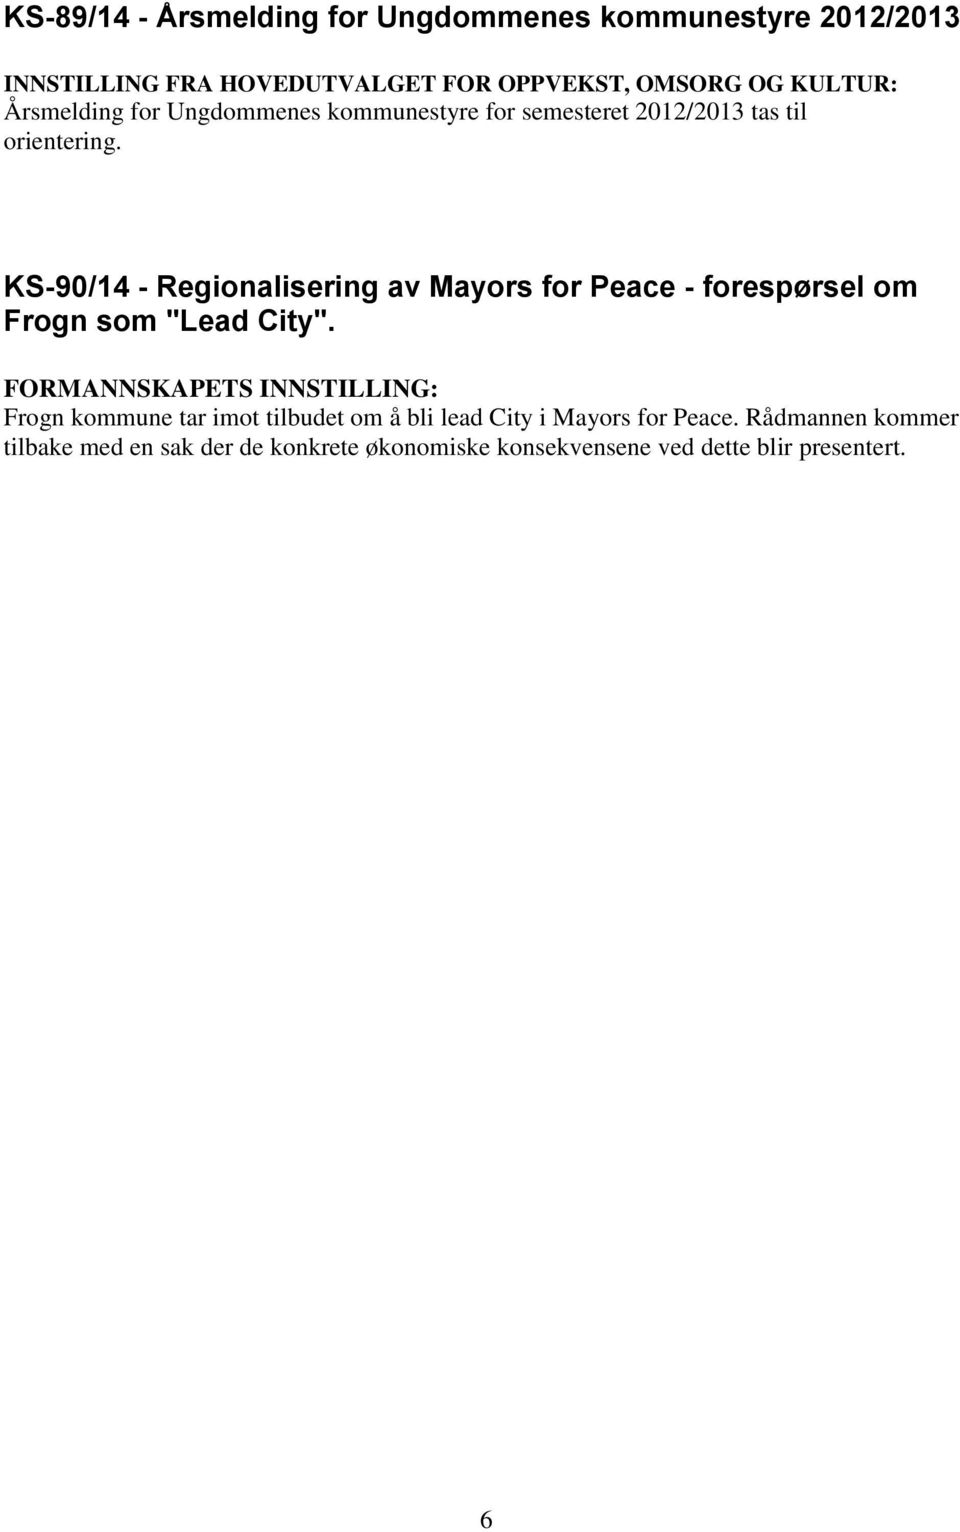 KS-90/14 - Regionalisering av Mayors for Peace - forespørsel om Frogn som "Lead City".